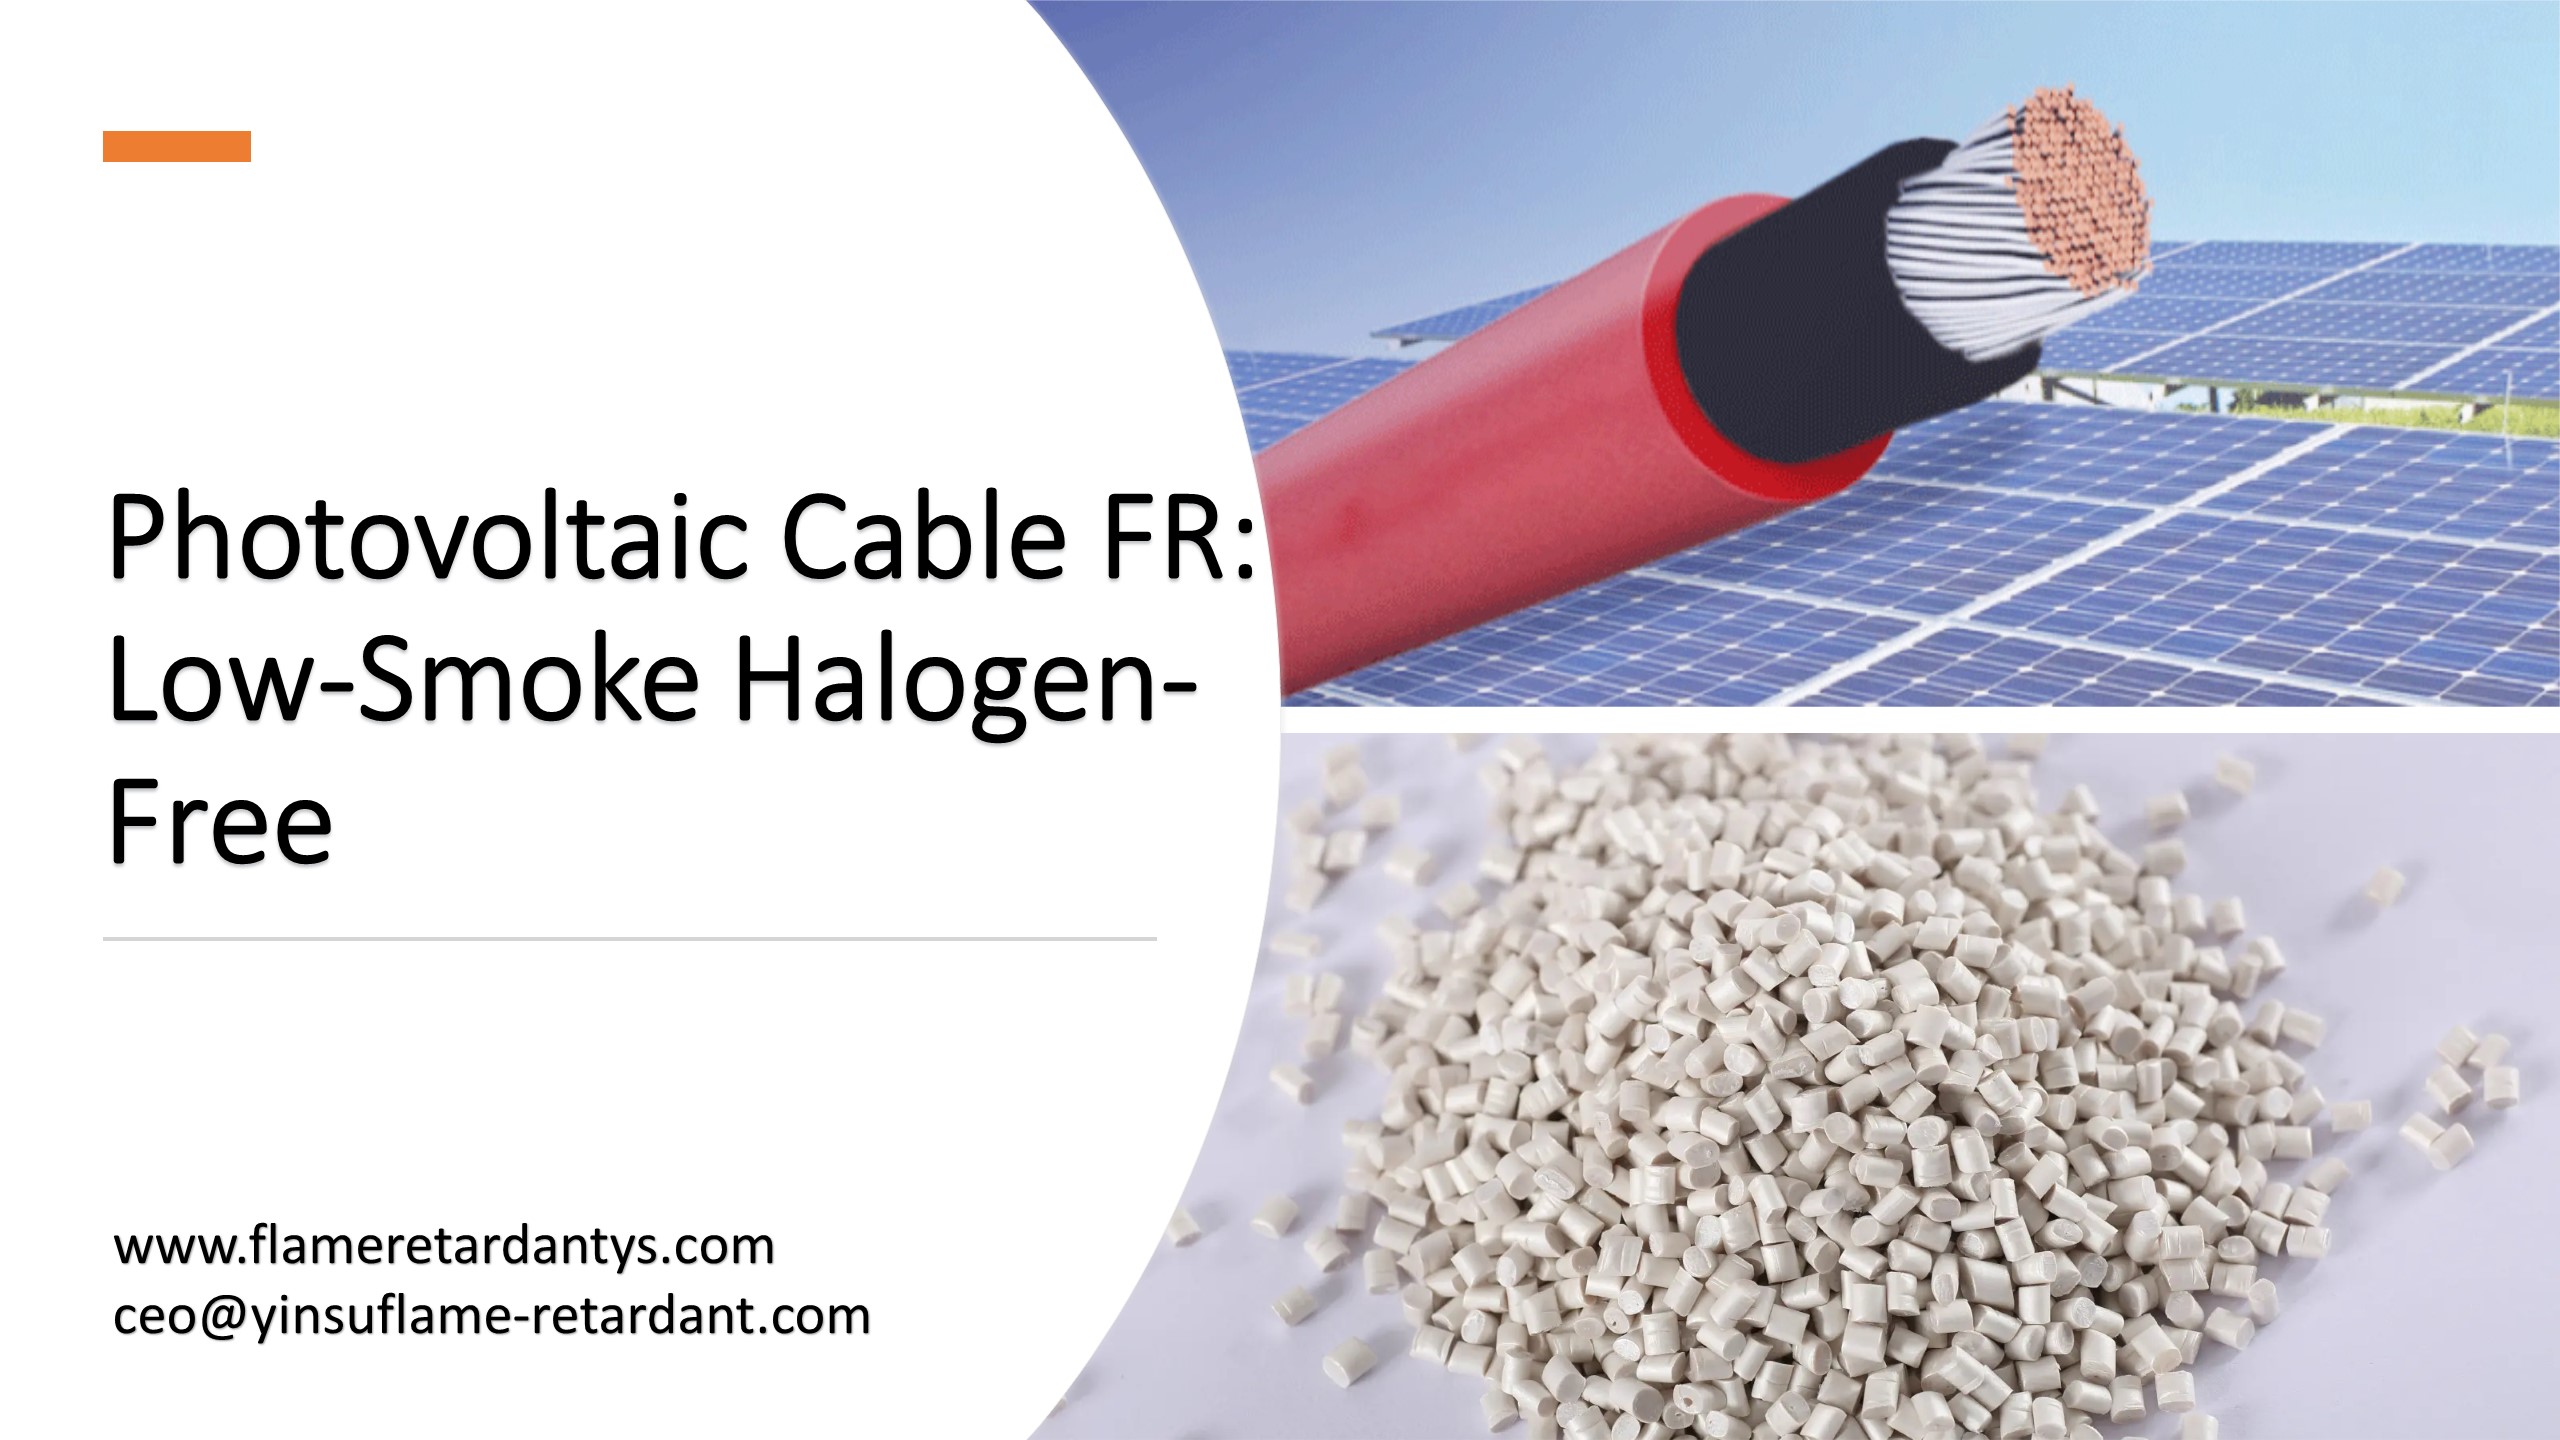 Cable Fotovoltaico FR: Bajo en Humo y Libre de Halógenos